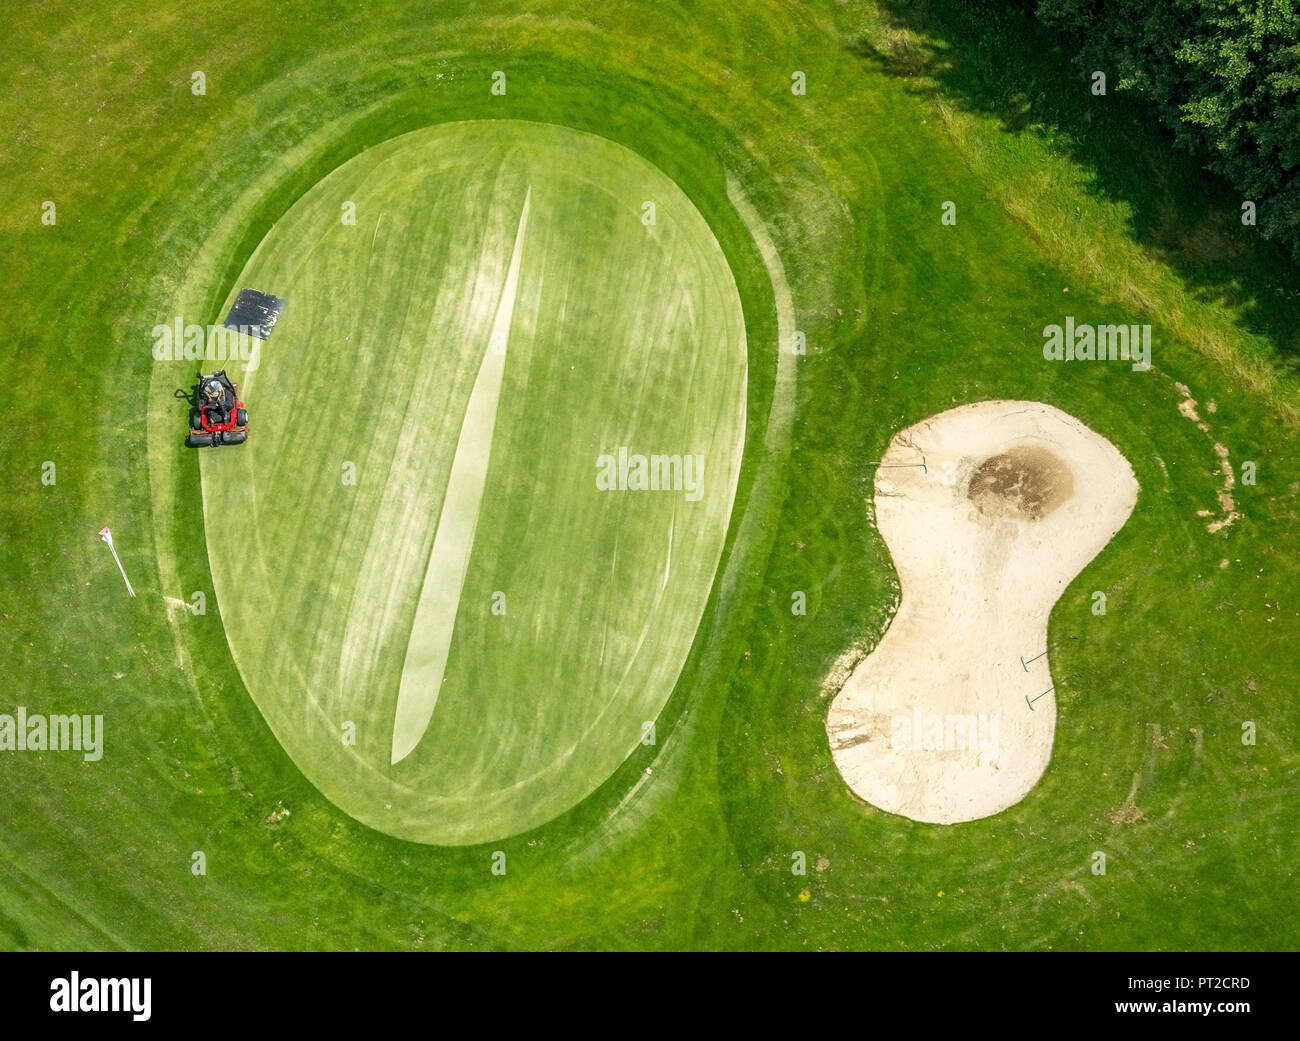 Golf club gut berge immagini e fotografie stock ad alta risoluzione - Alamy